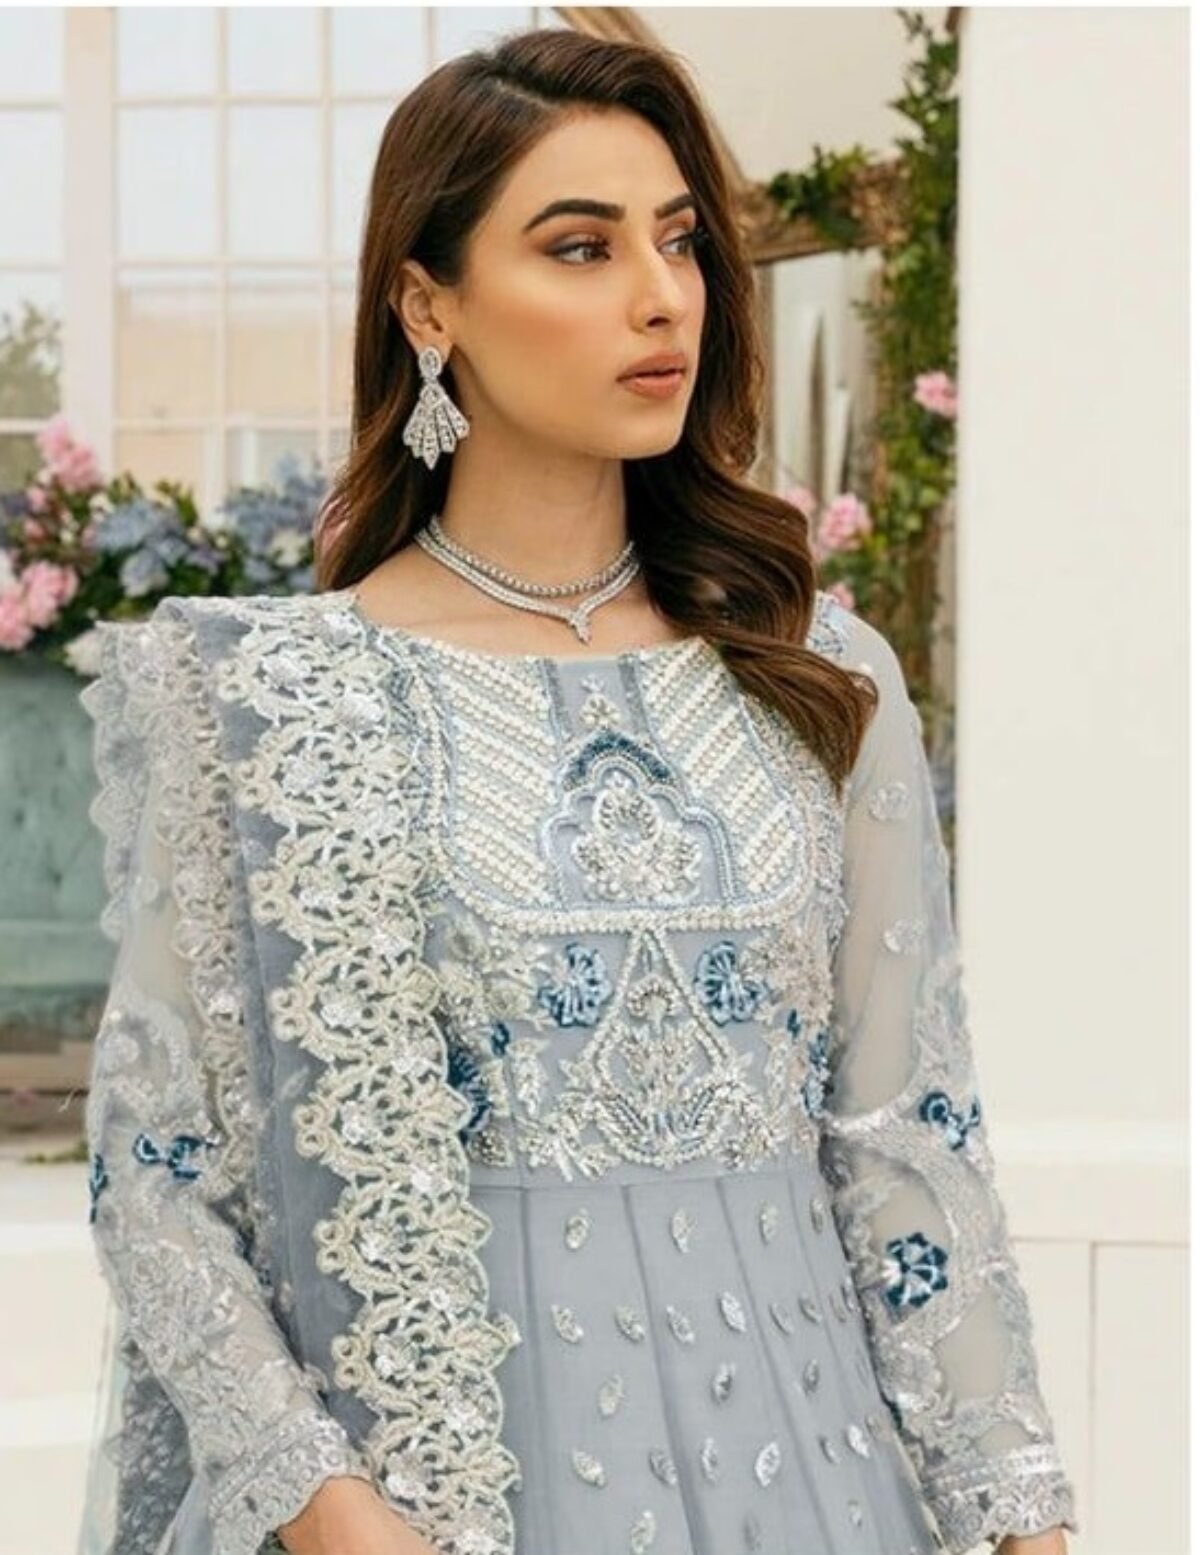 Pakistani Bridal Dresses Latest Designs Online – Nameera by Farooq